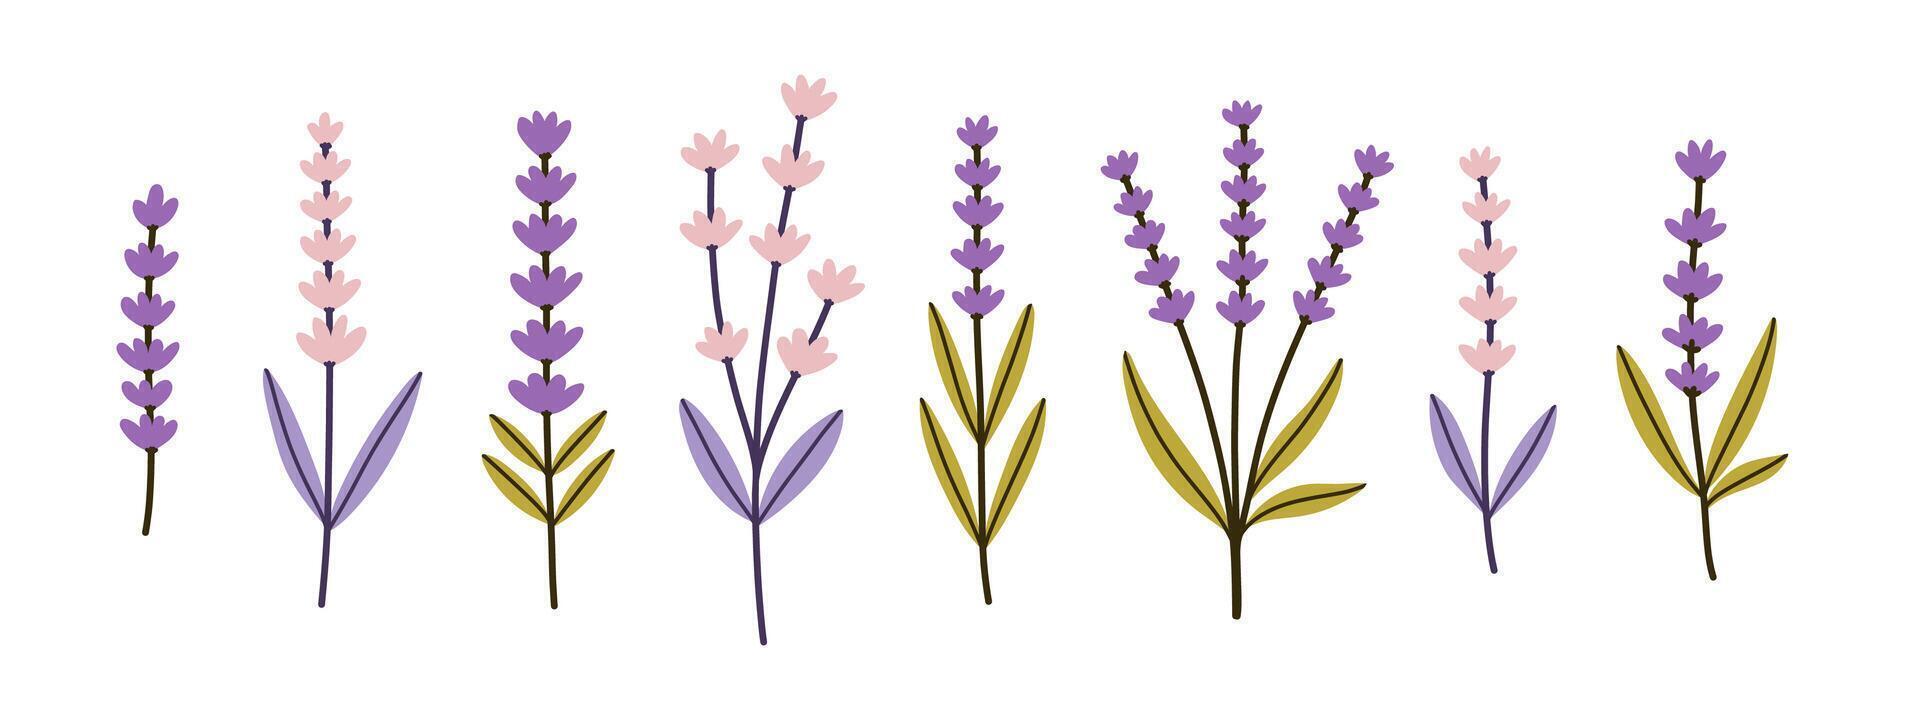 lavendel, provence blommor uppsättning. franska blommig örter med rosa och violett blommar. enkel platt samling av vild fält lavandula ritningar. illustration isolerat på vit bakgrund. vektor